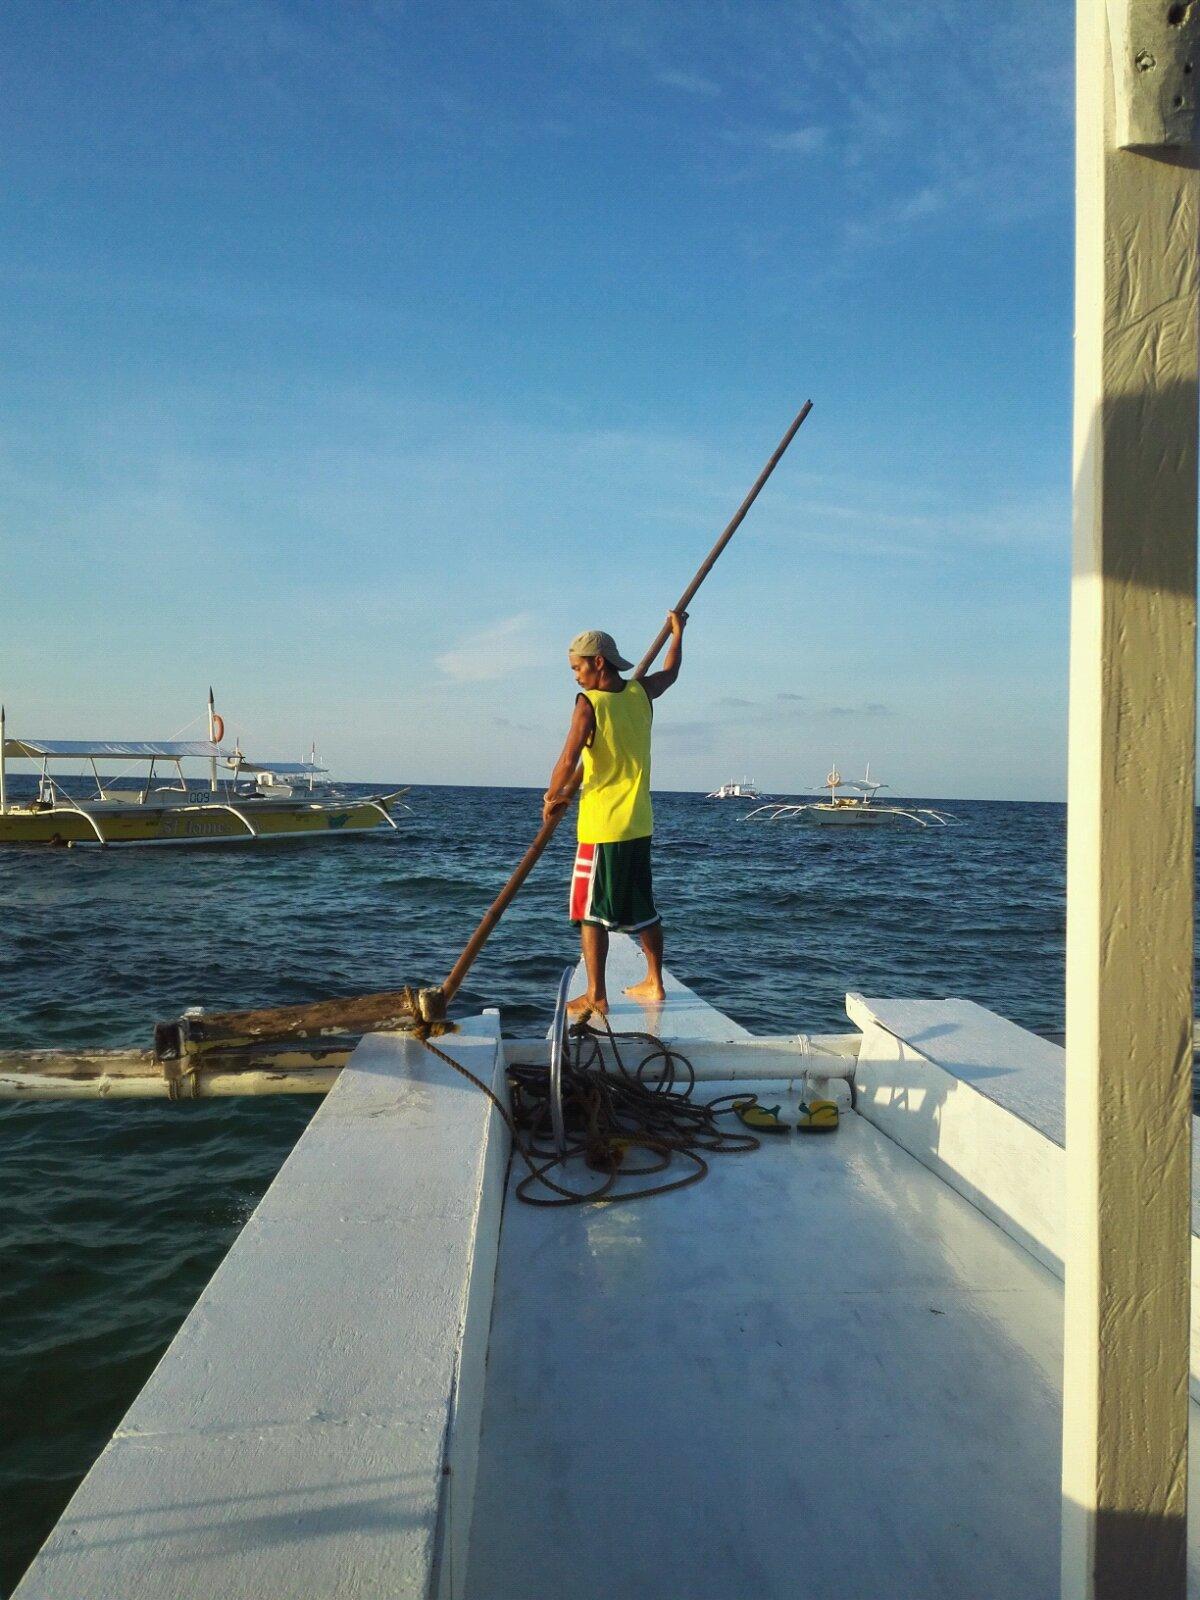 这是船夫看他撑杆出海,站在船头的样子让我觉的他像海盗杰克